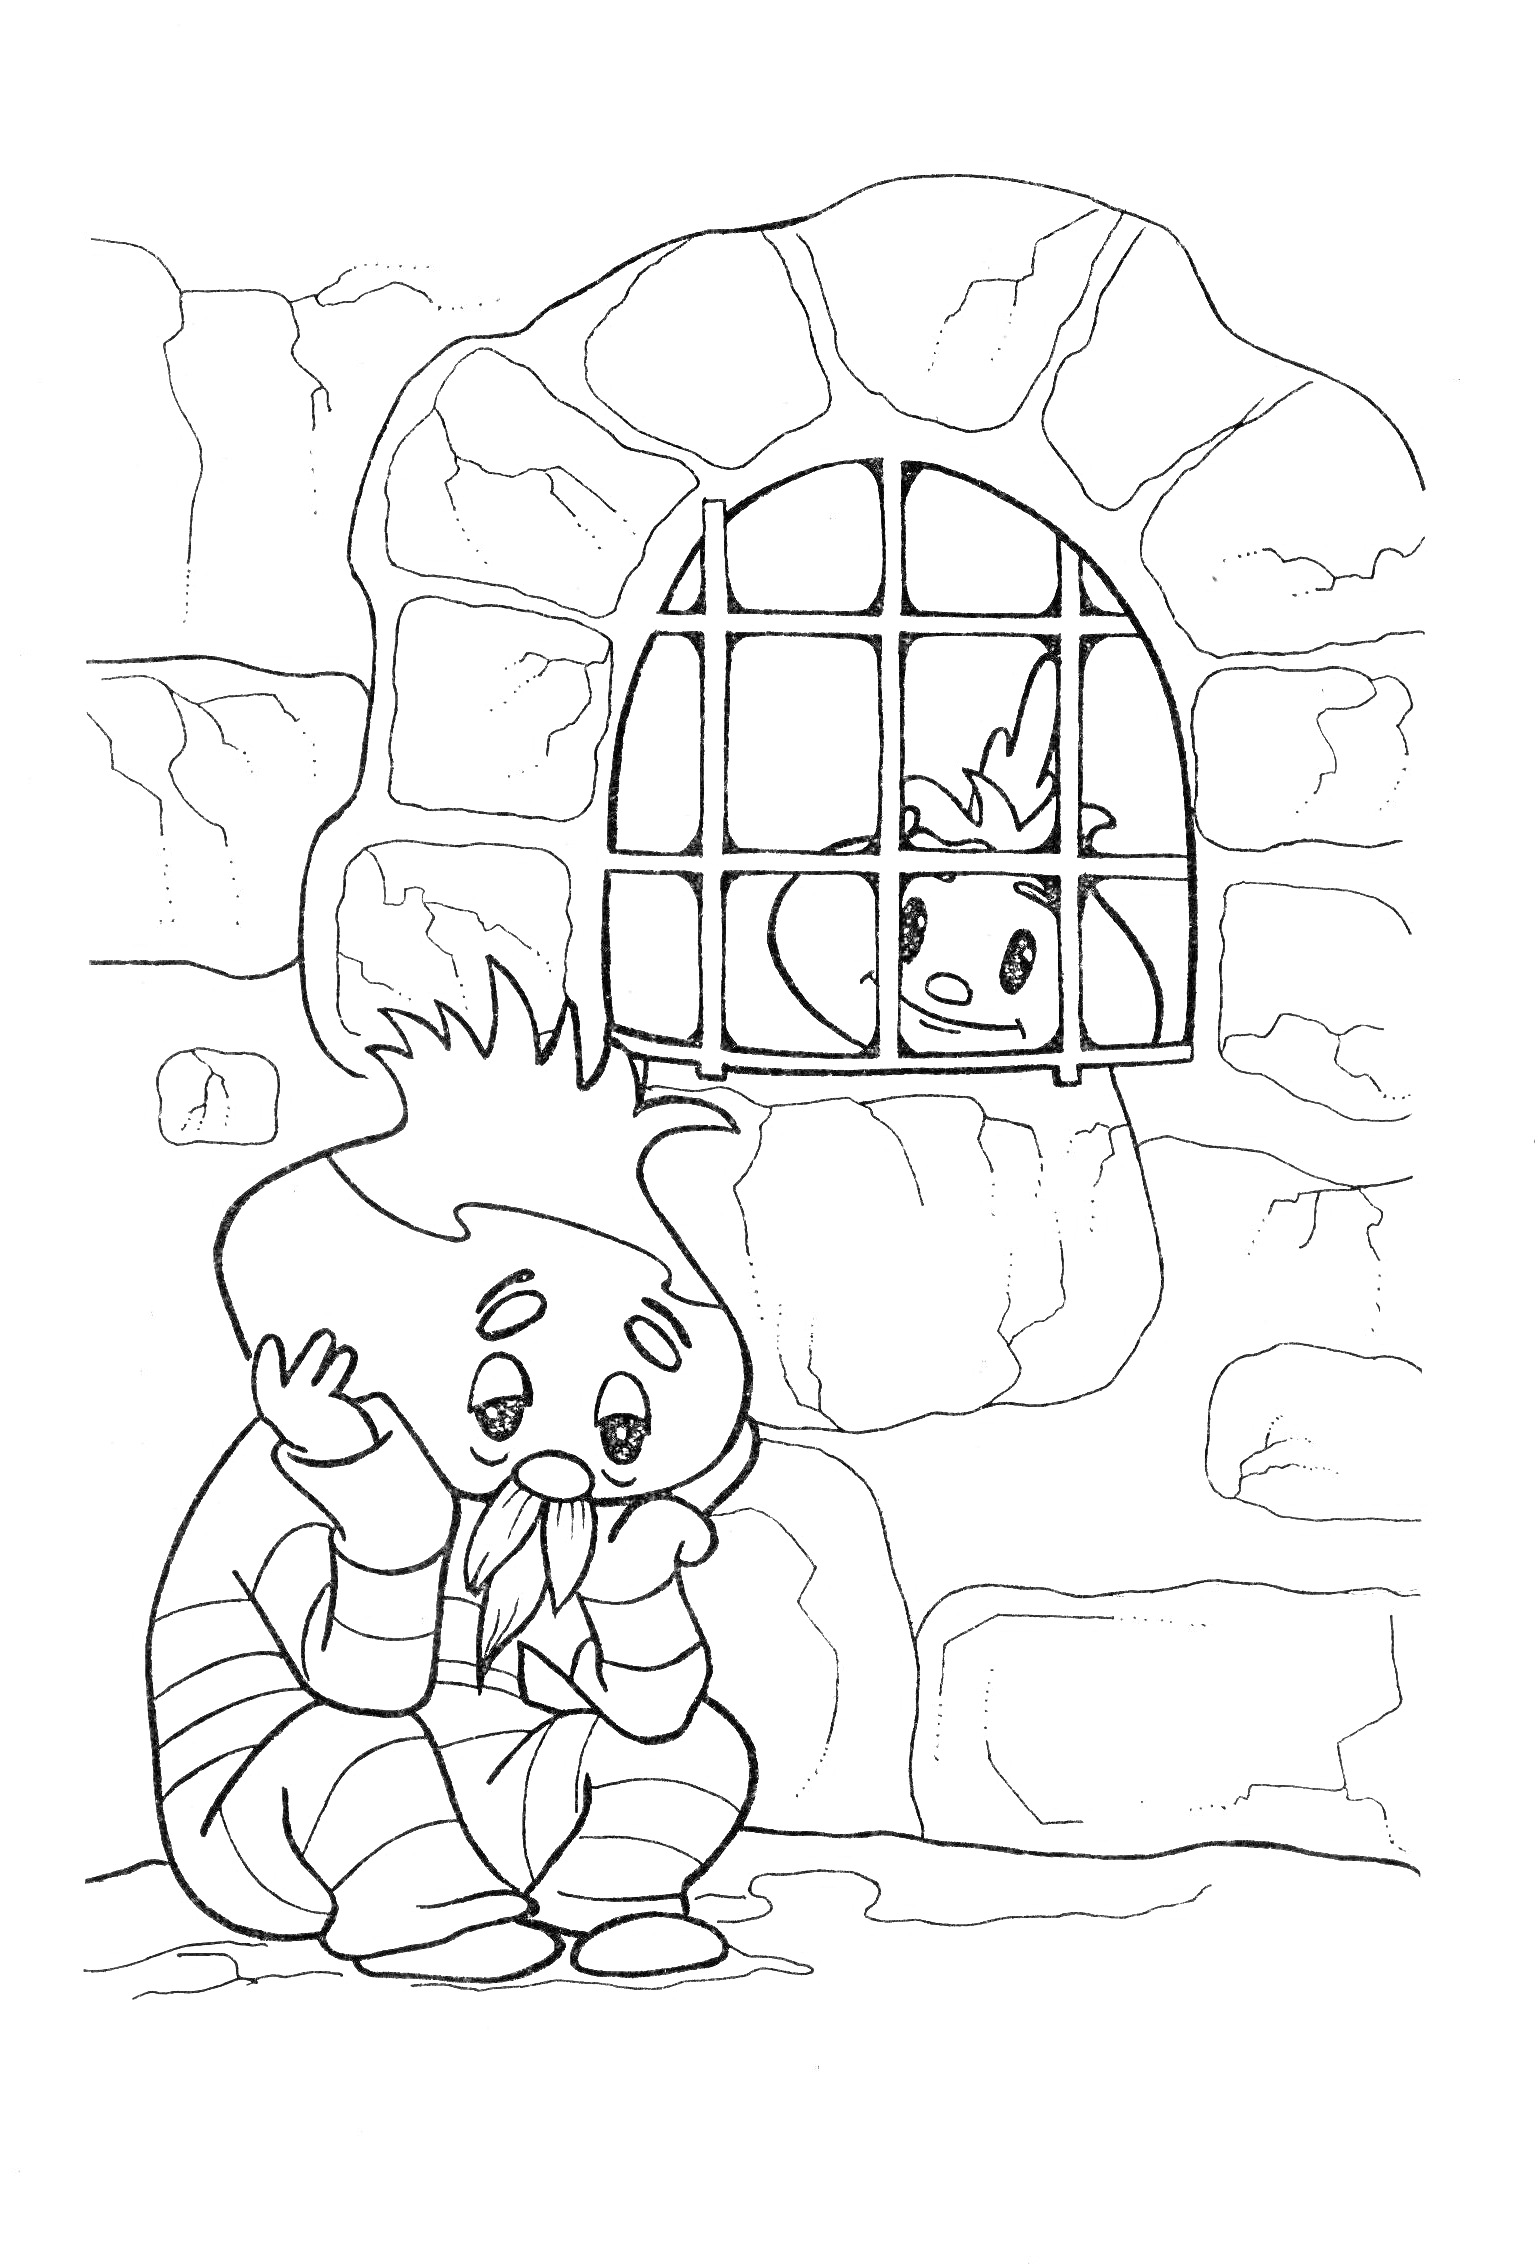 Чиполлино в тюремной камере, с другом за окном